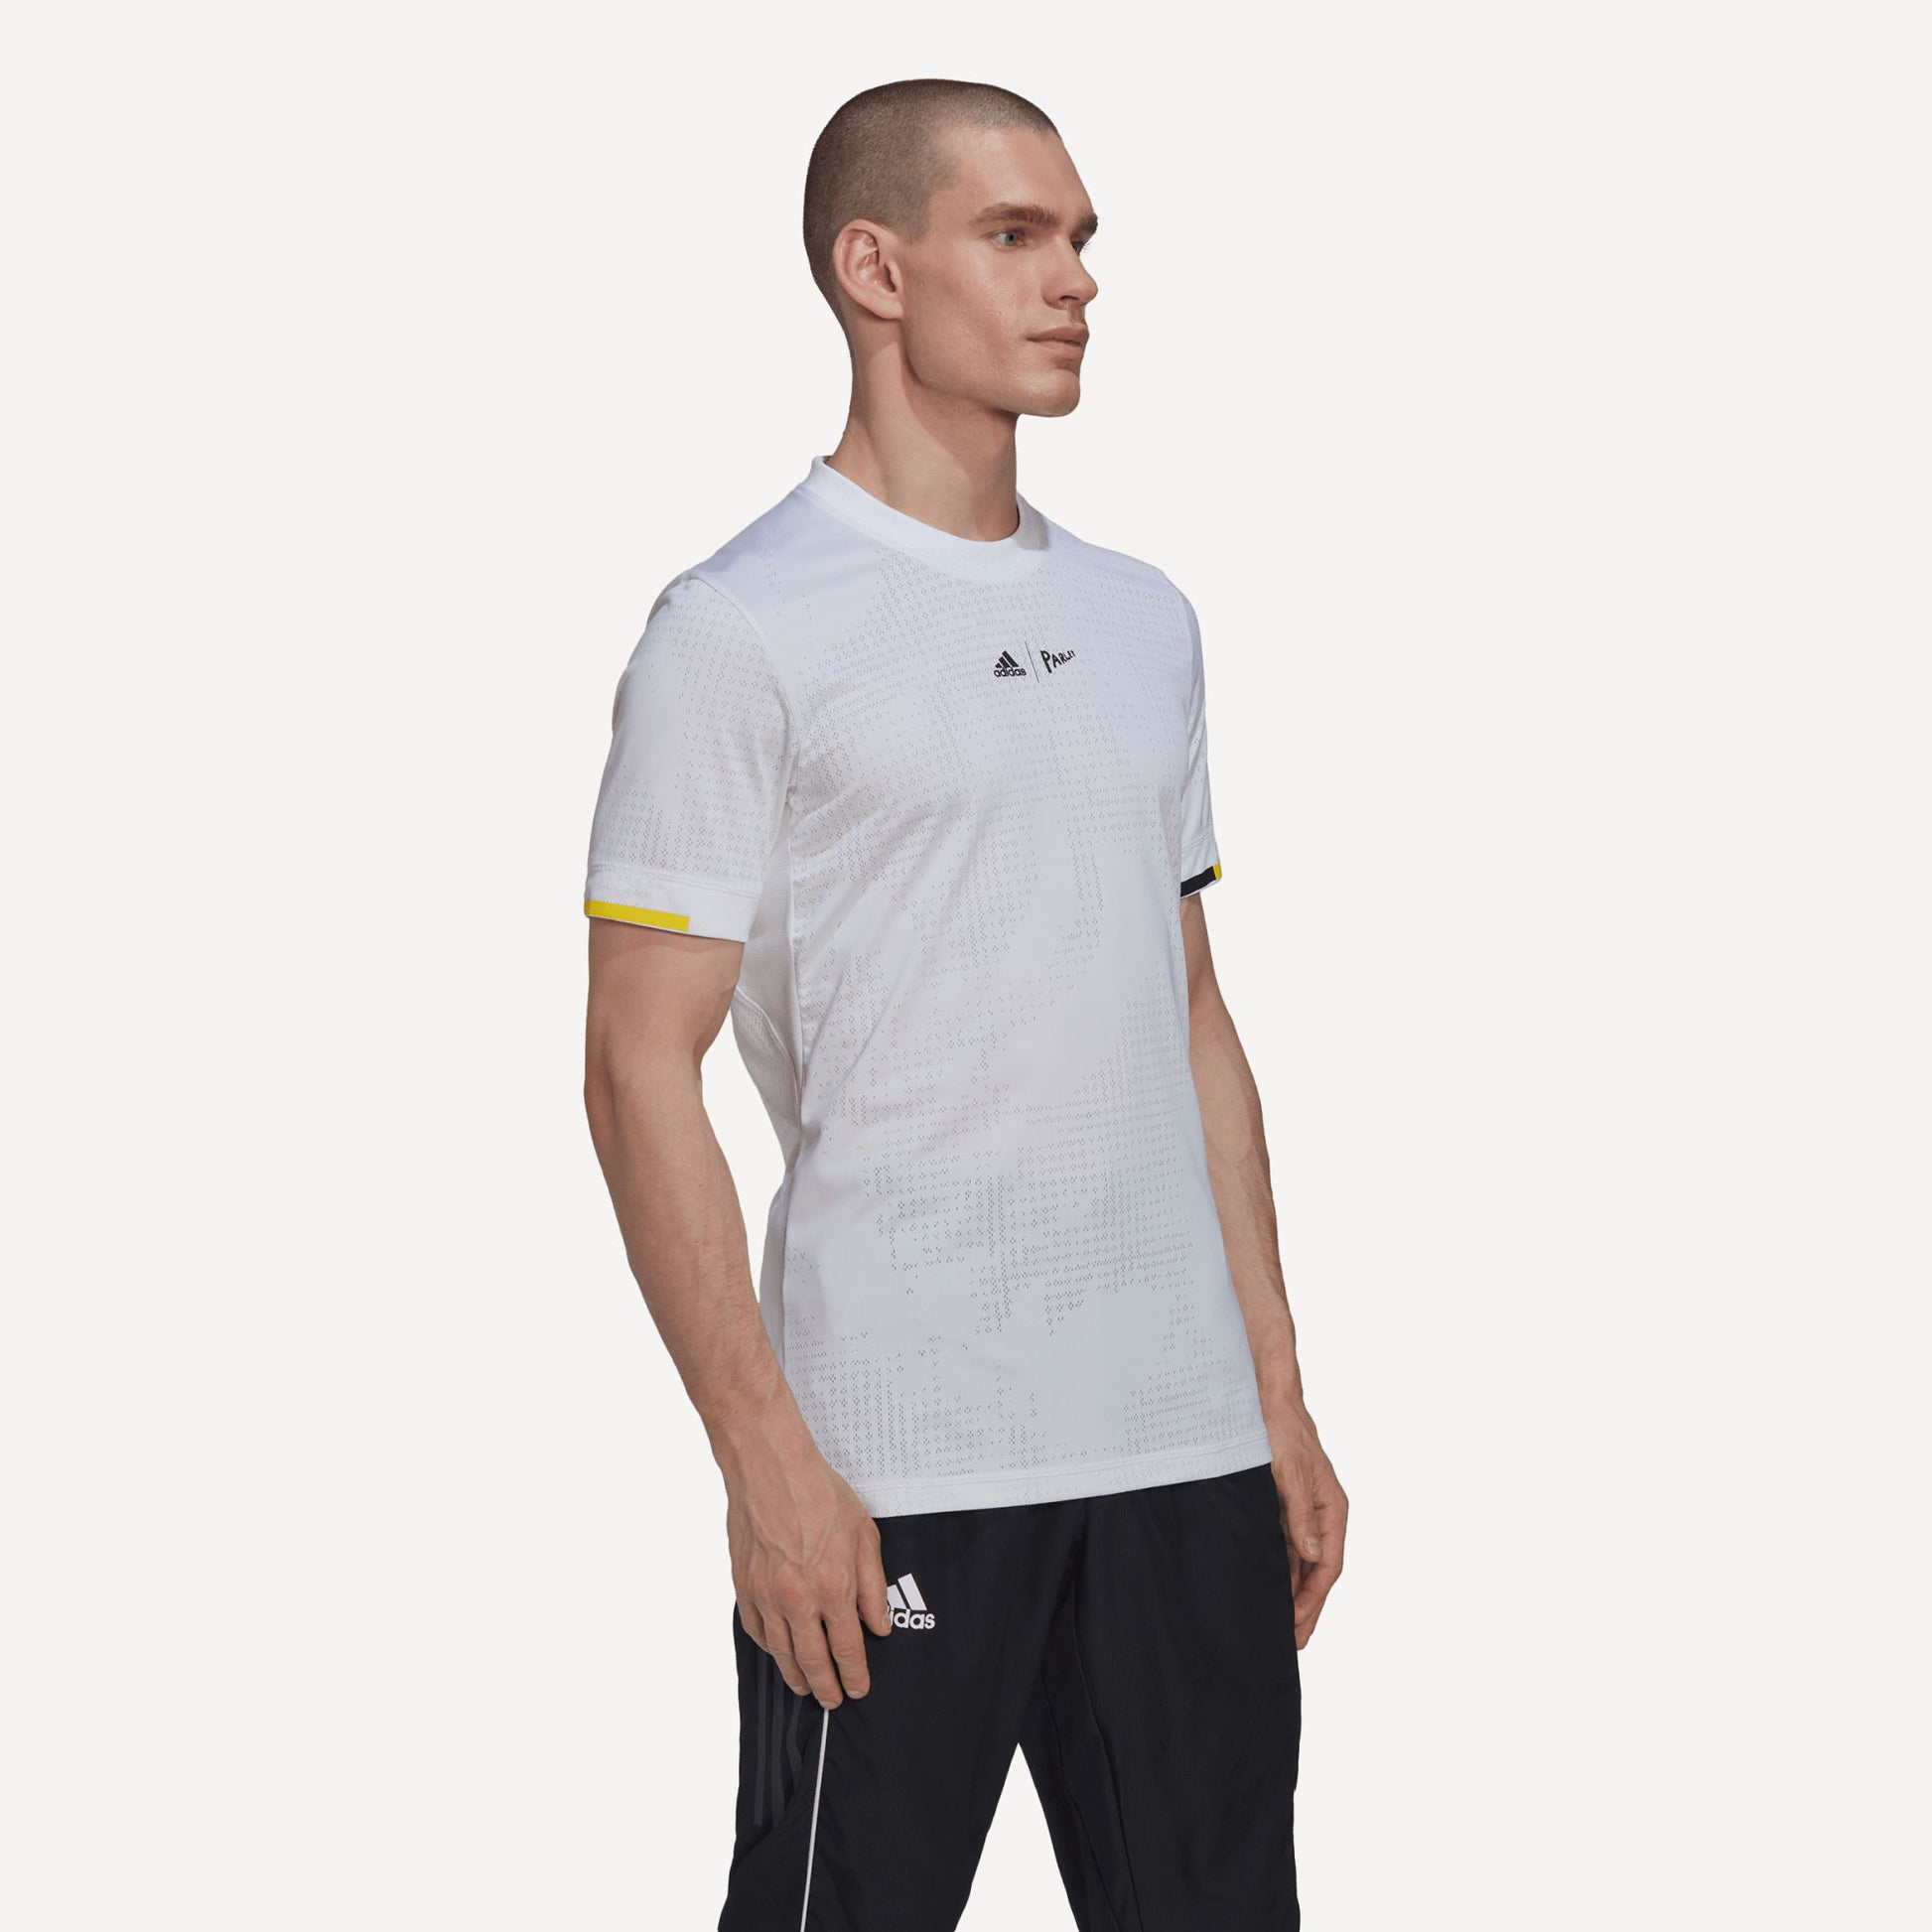 adidas London Freelift Men's Tennis Shirt White (3)